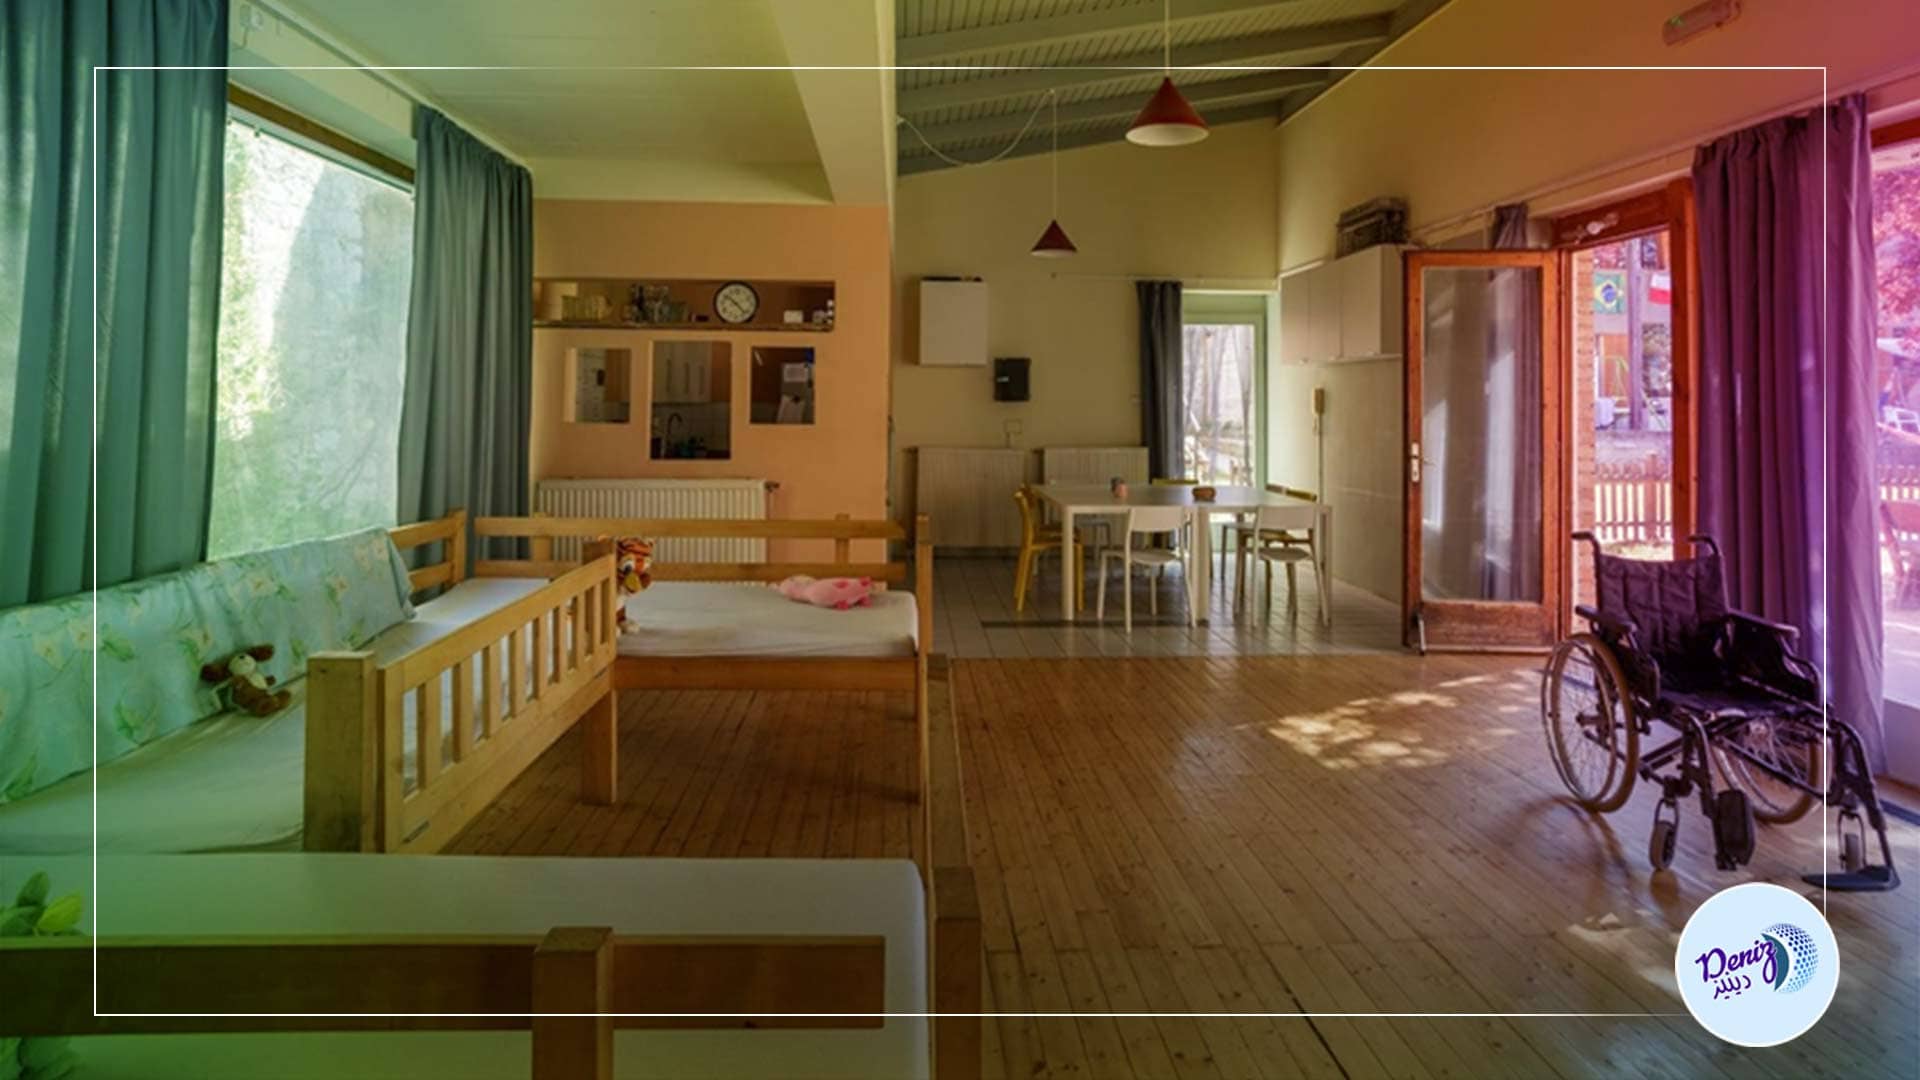 "تيكا" التركية تجدد مبنى لدار رعاية الأطفال في المجر